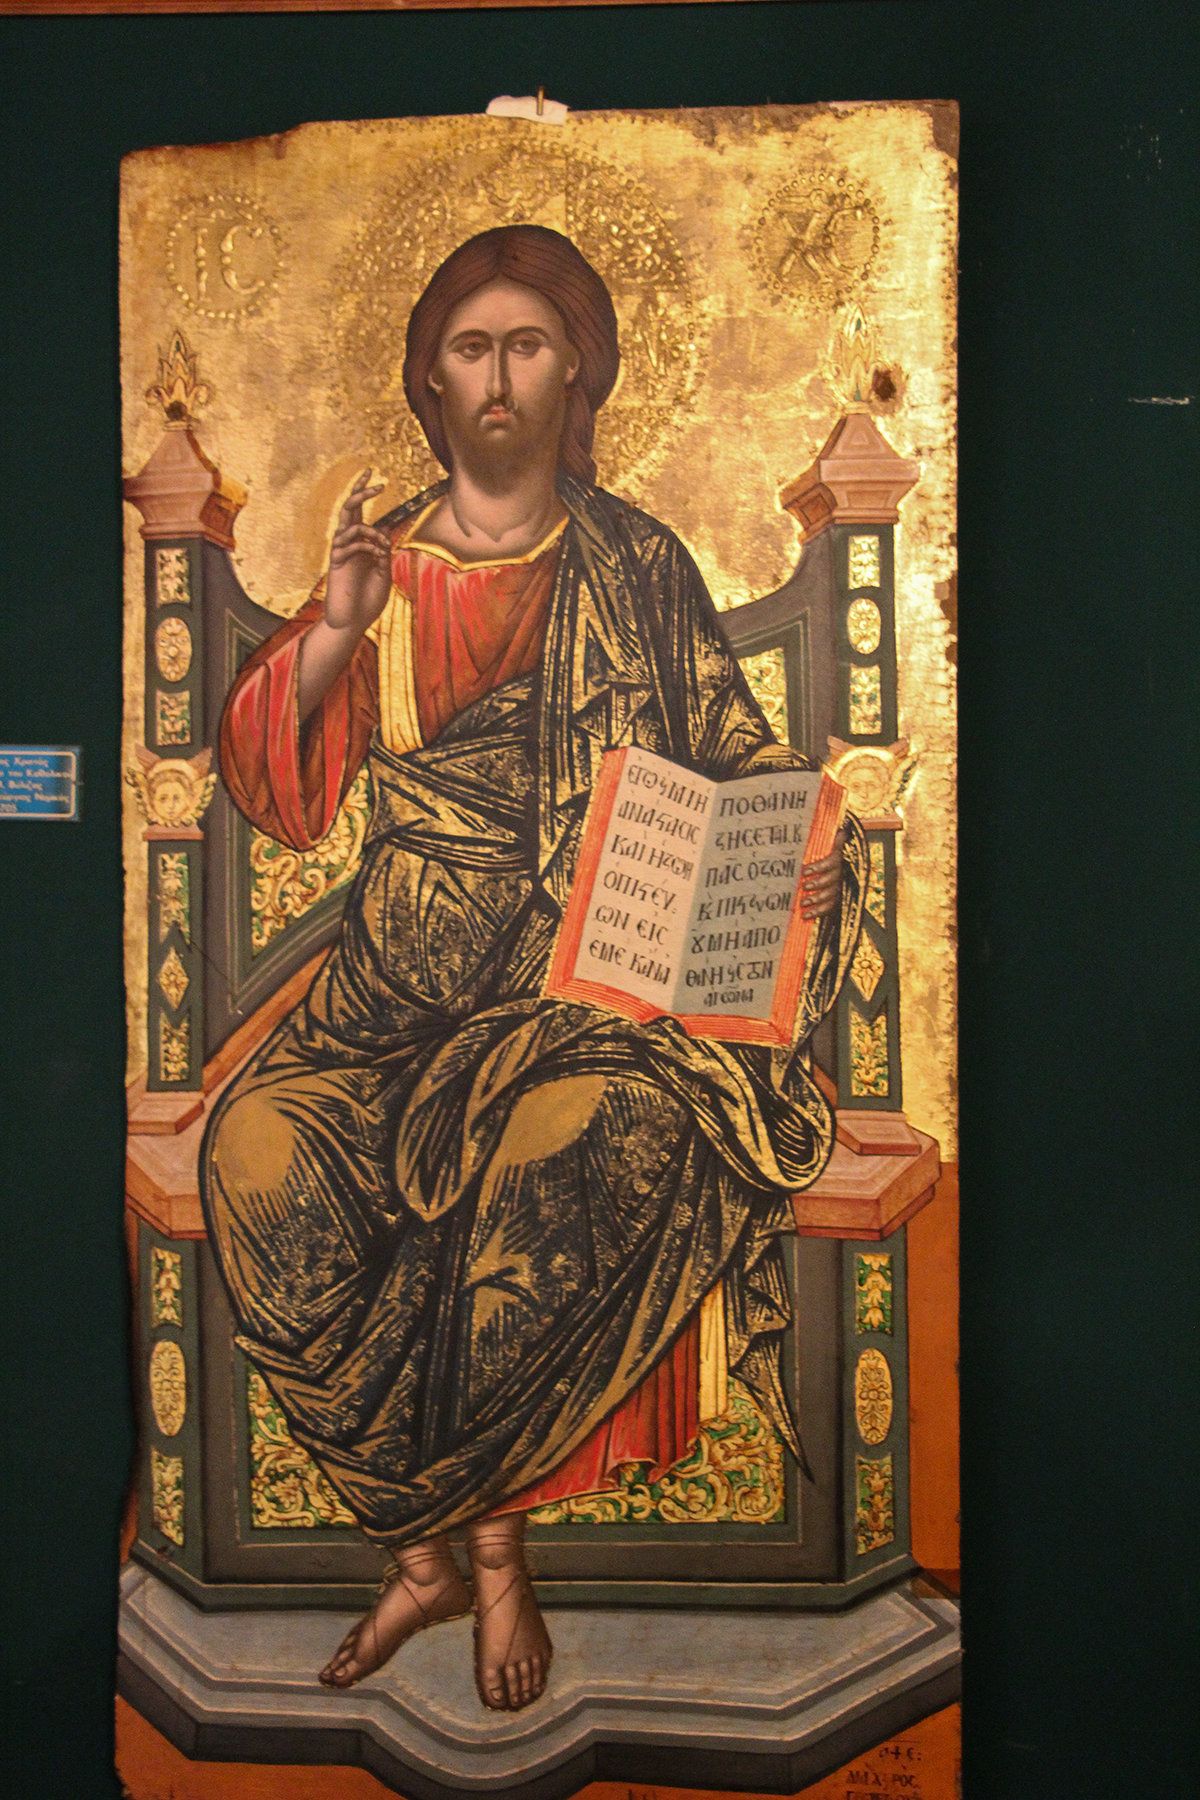 Ένθρονος Χριστός, δεσποτική εικόνα από το τέμπλο του ναού, σήμερα εκτίθεται στο Μουσείο Μεταβυζαντινών Εικόνων στο Ματσούκι. Ζωγράφος ο Γεώργιος Νομικός, 1705